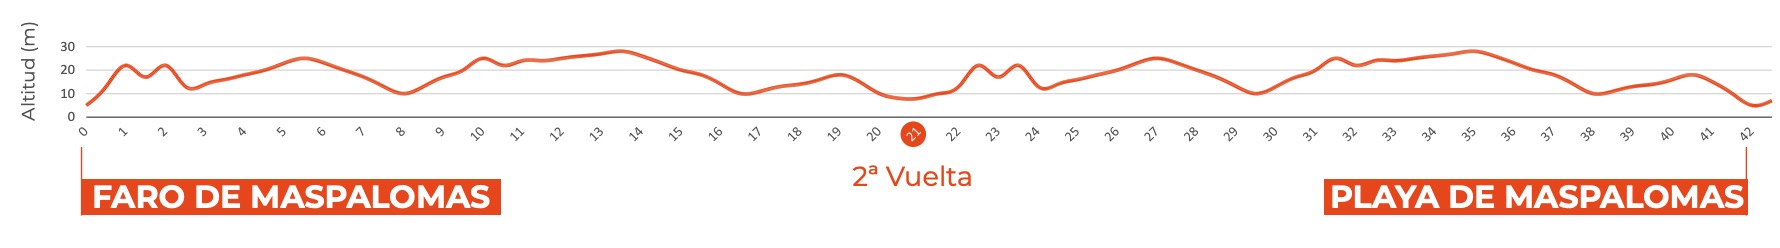 Gran Canaria Marathon Elevation Profile in metres